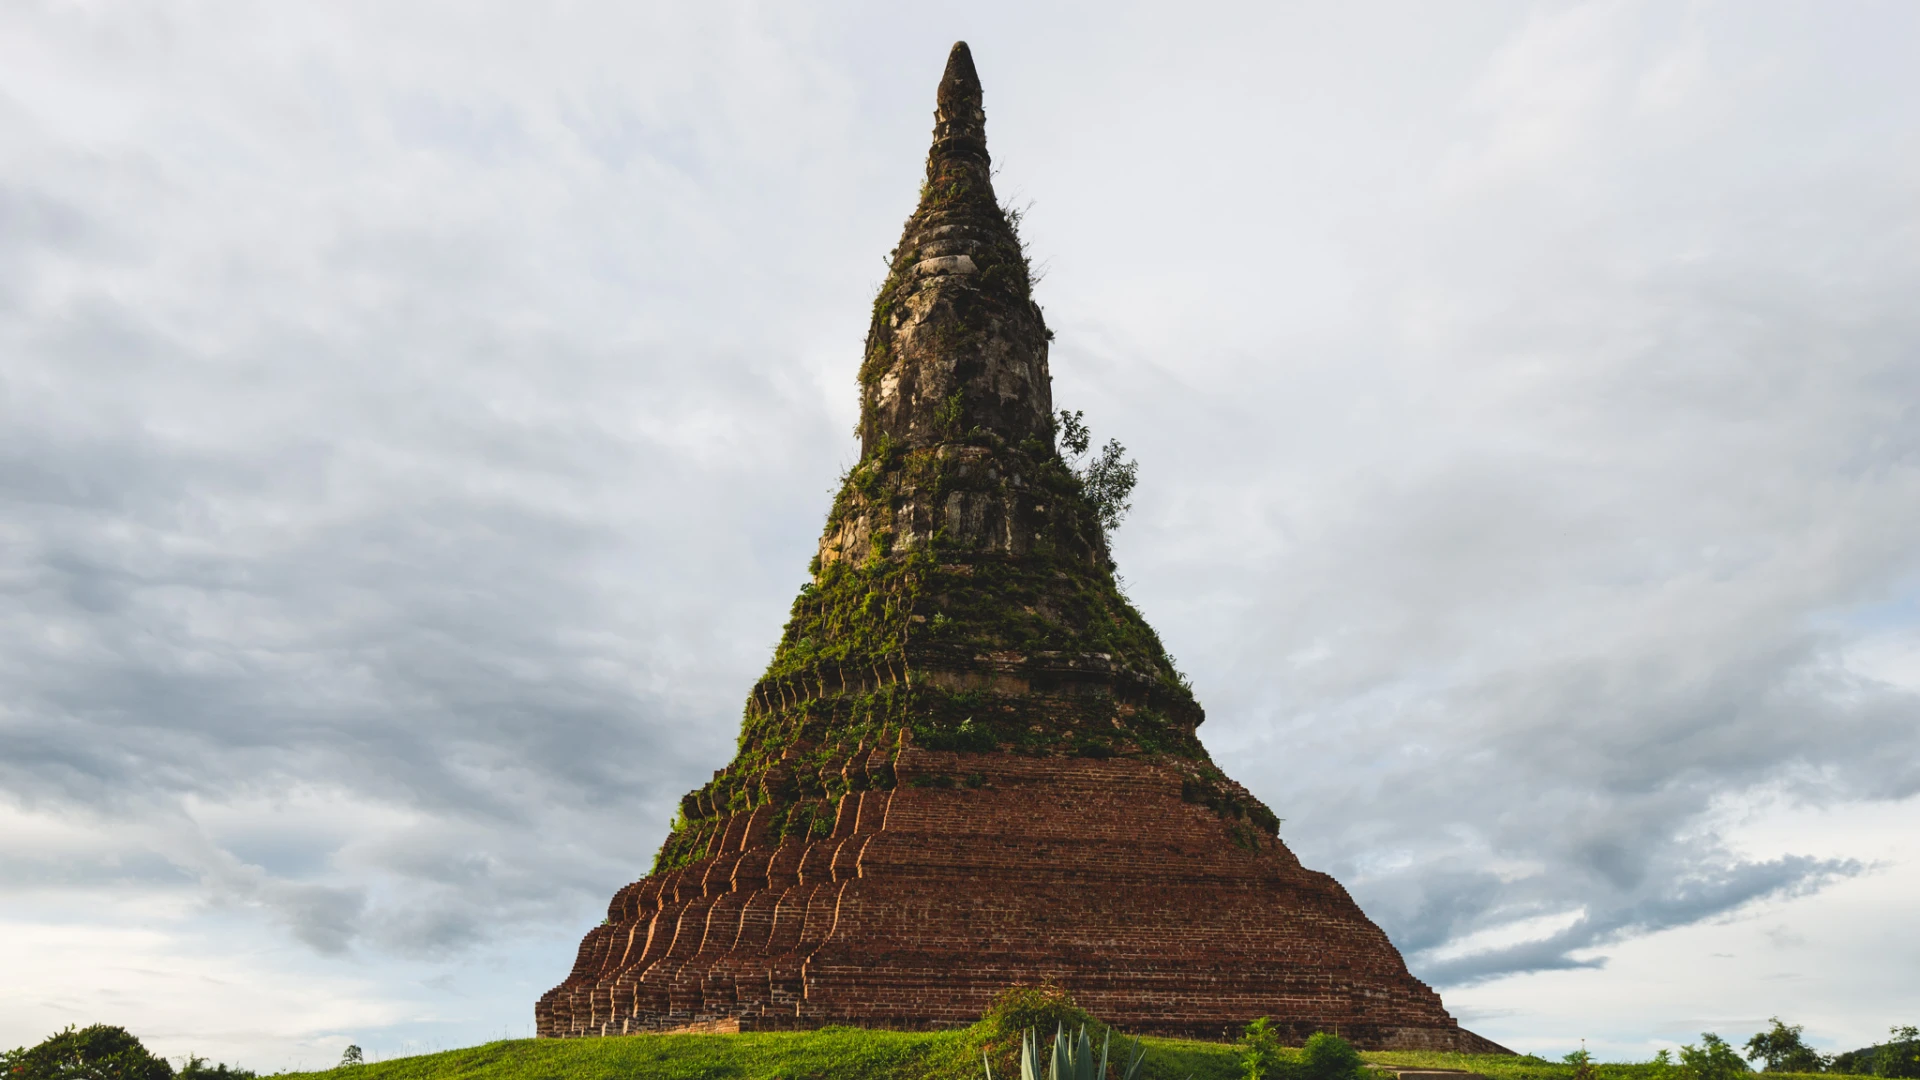 That Foun Stupa